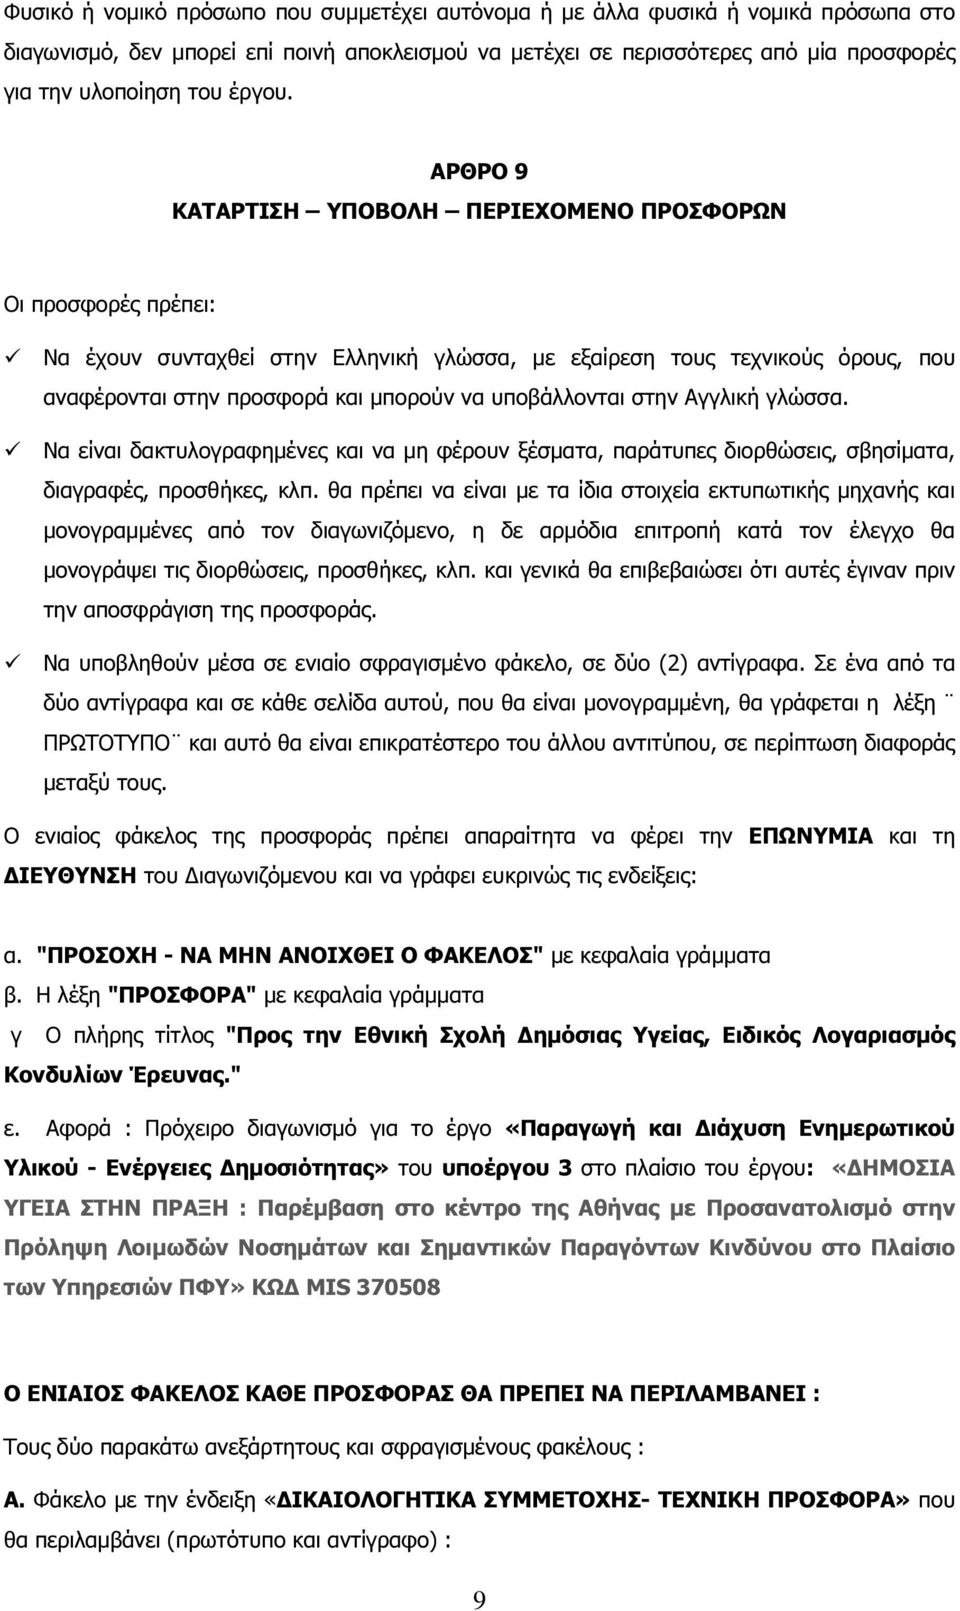 ΑΡΘΡΟ 9 ΚΑΤΑΡΤΙΣΗ ΥΠΟΒΟΛΗ ΠΕΡΙΕΧΟΜΕΝΟ ΠΡΟΣΦΟΡΩΝ Οι προσφορές πρέπει: Να έχουν συνταχθεί στην Ελληνική γλώσσα, µε εξαίρεση τους τεχνικούς όρους, που αναφέρονται στην προσφορά και µπορούν να